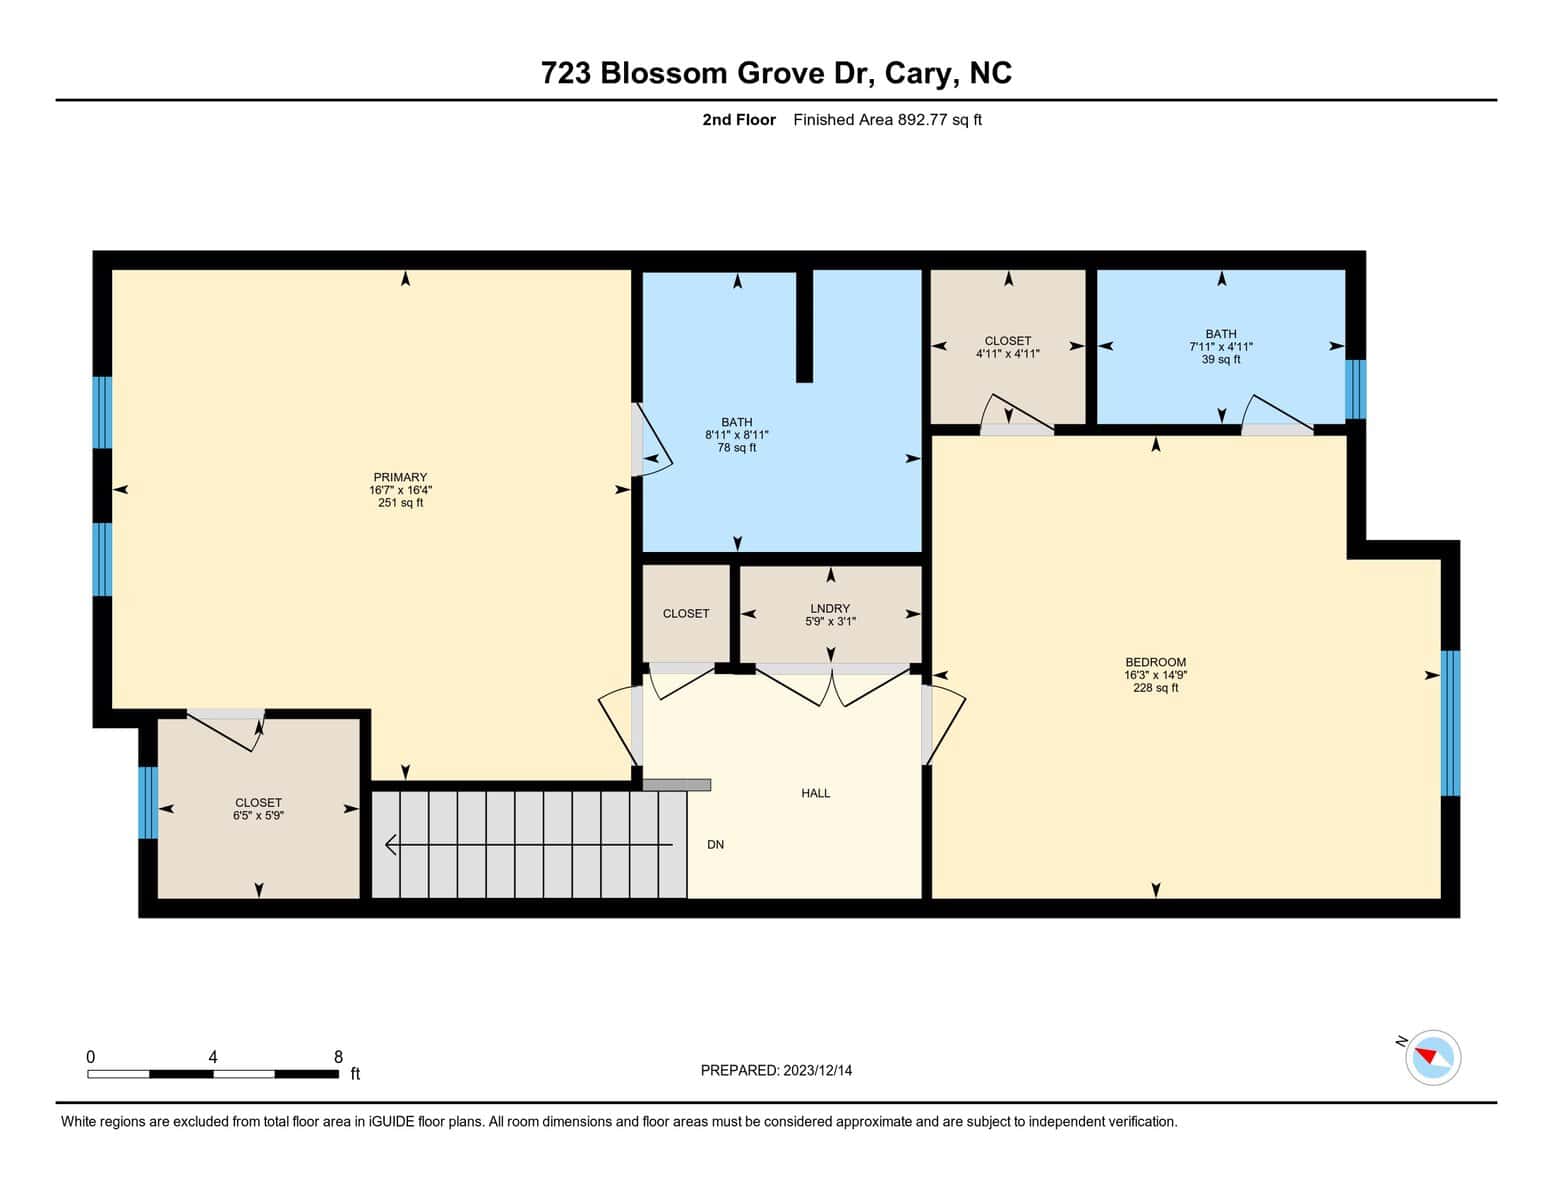 723 Blossom Grove, Cary, NC 2nd floor